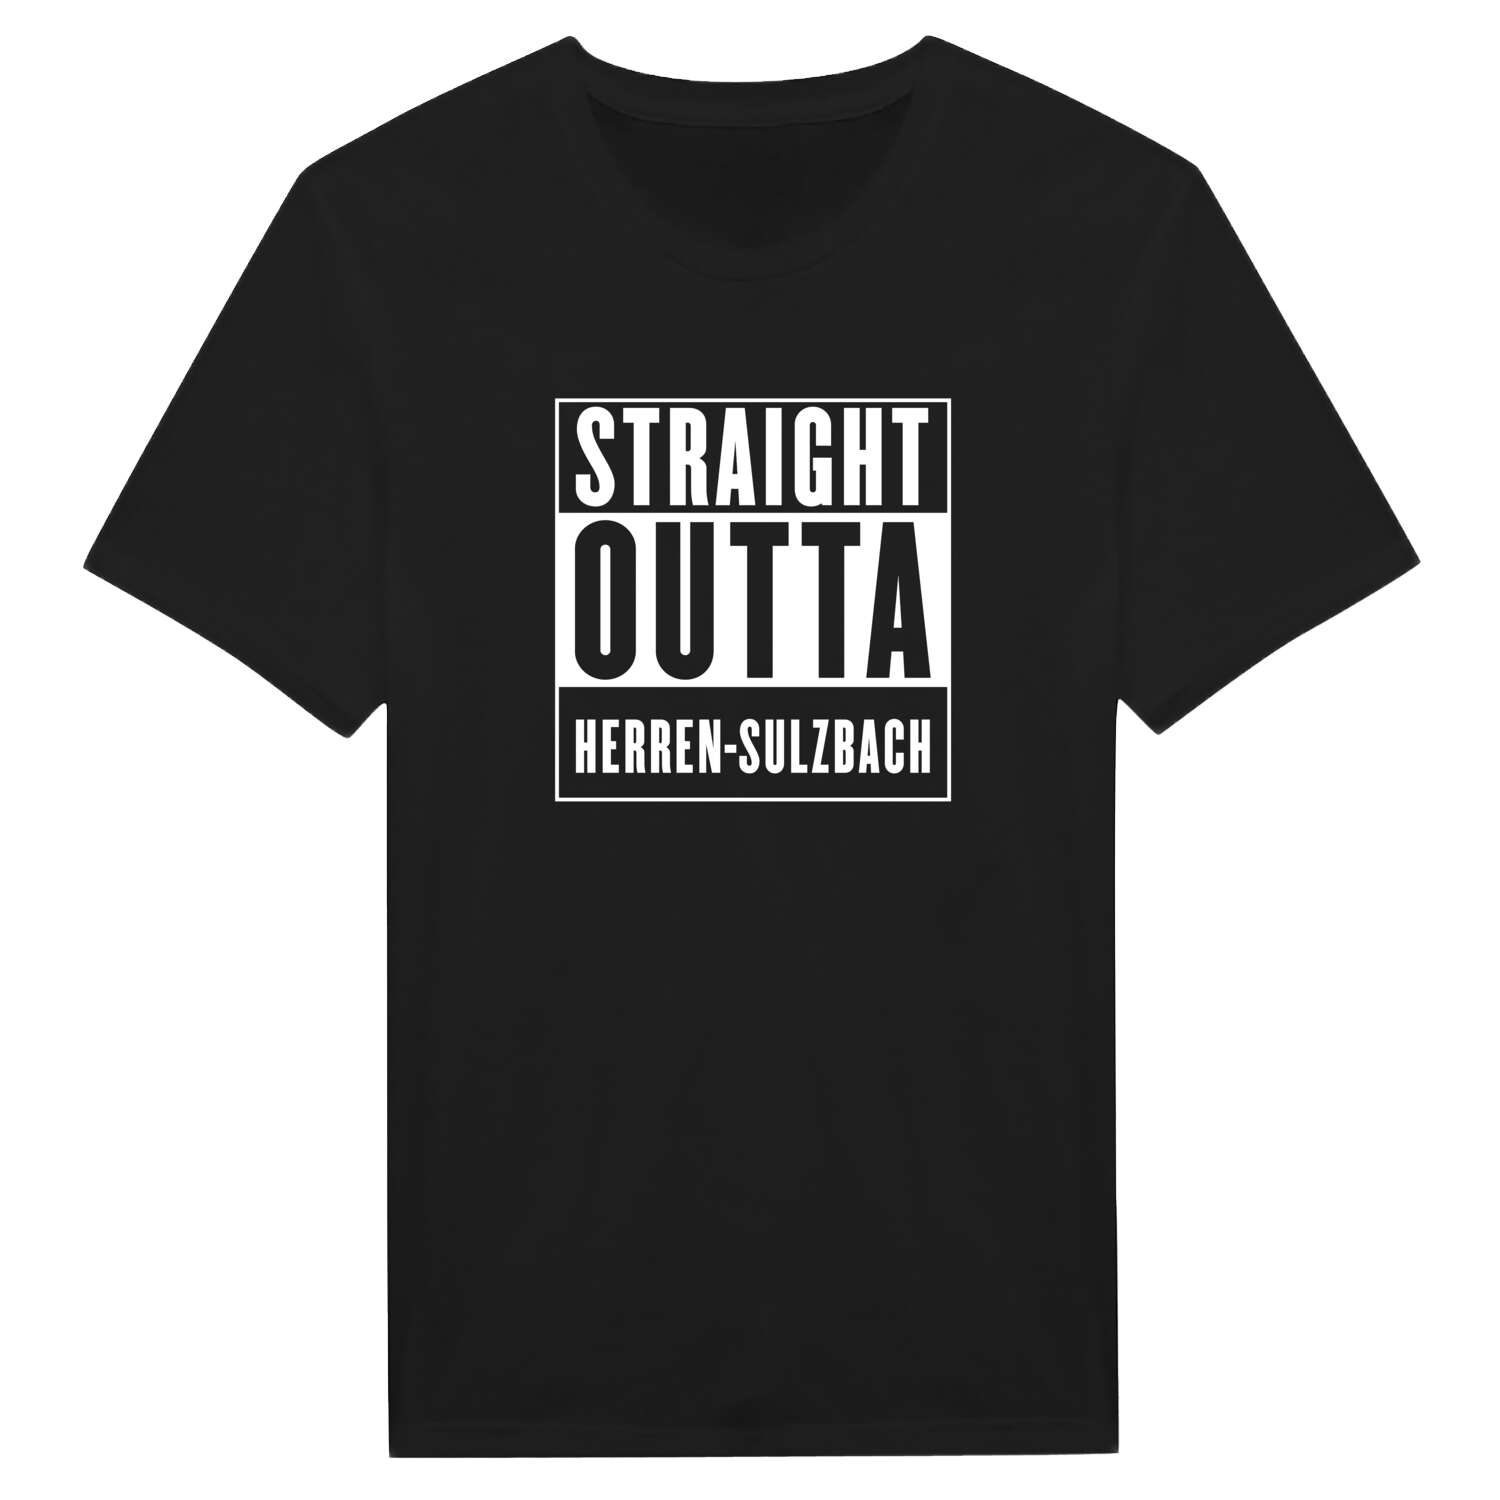 Herren-Sulzbach T-Shirt »Straight Outta«